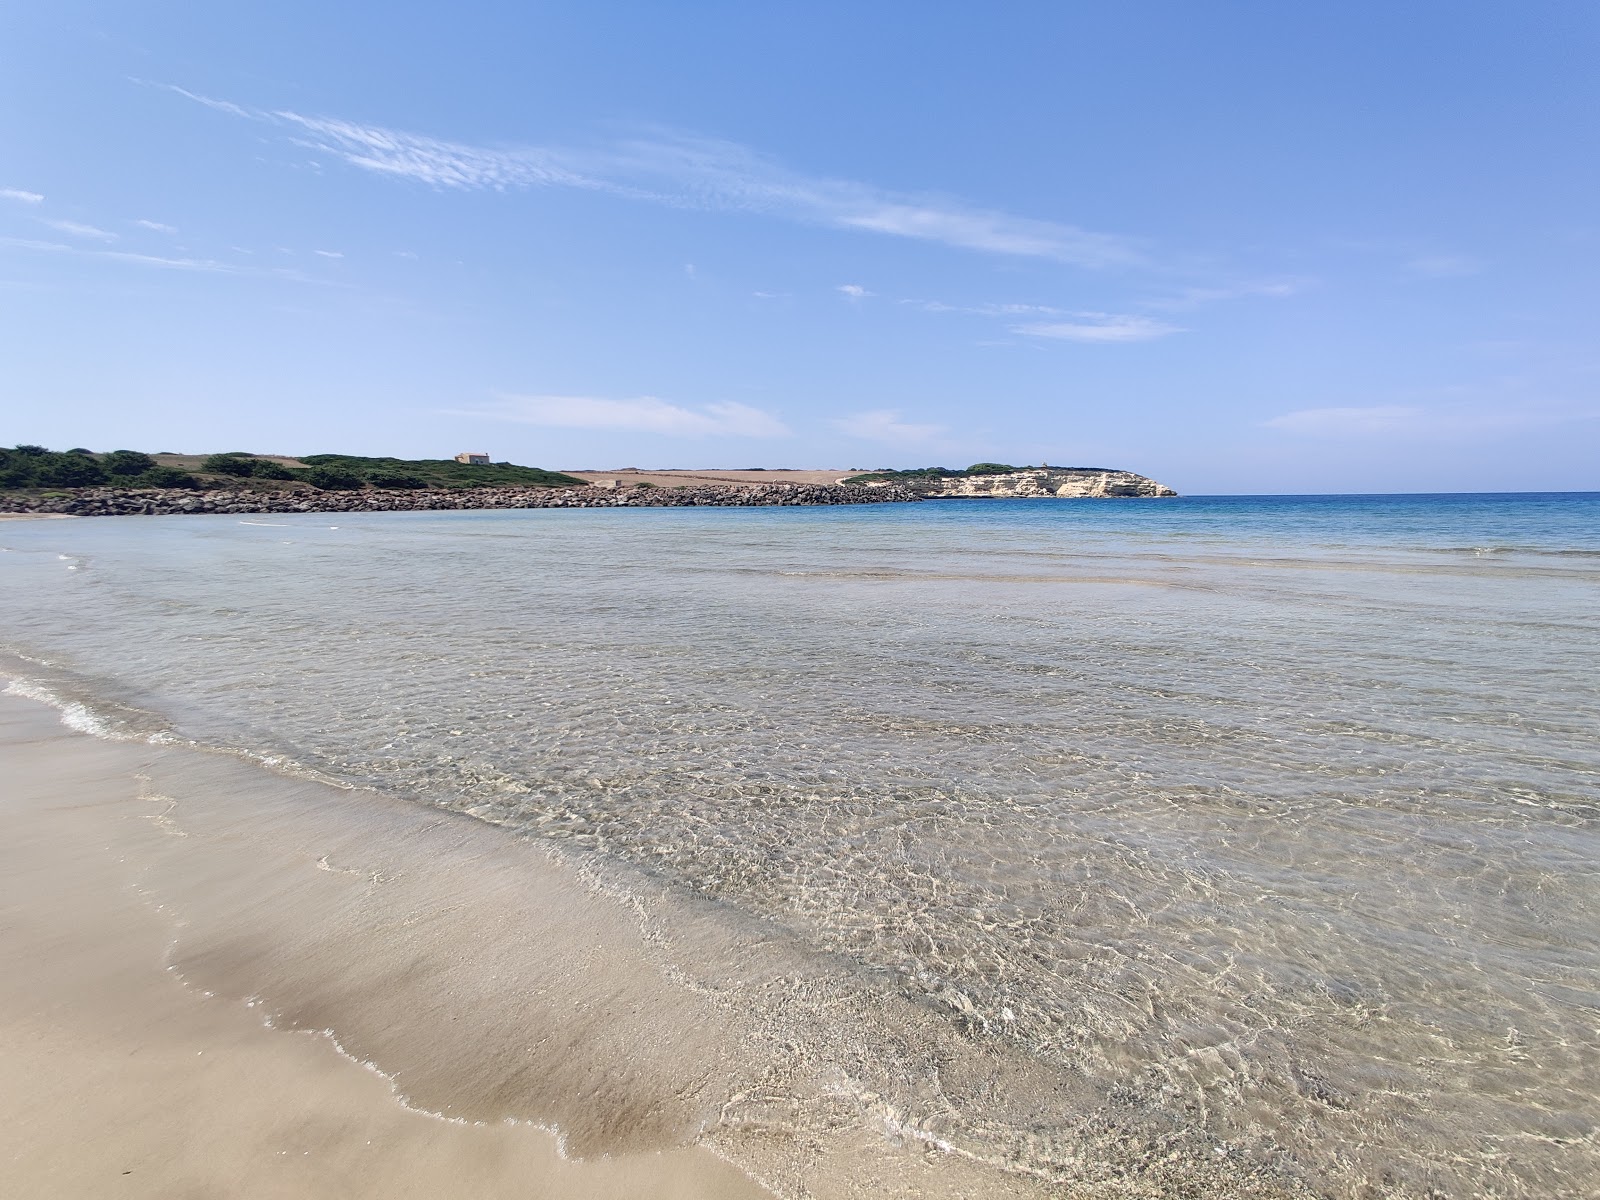 Zdjęcie Spiaggia Di Is Benas z przestronna plaża